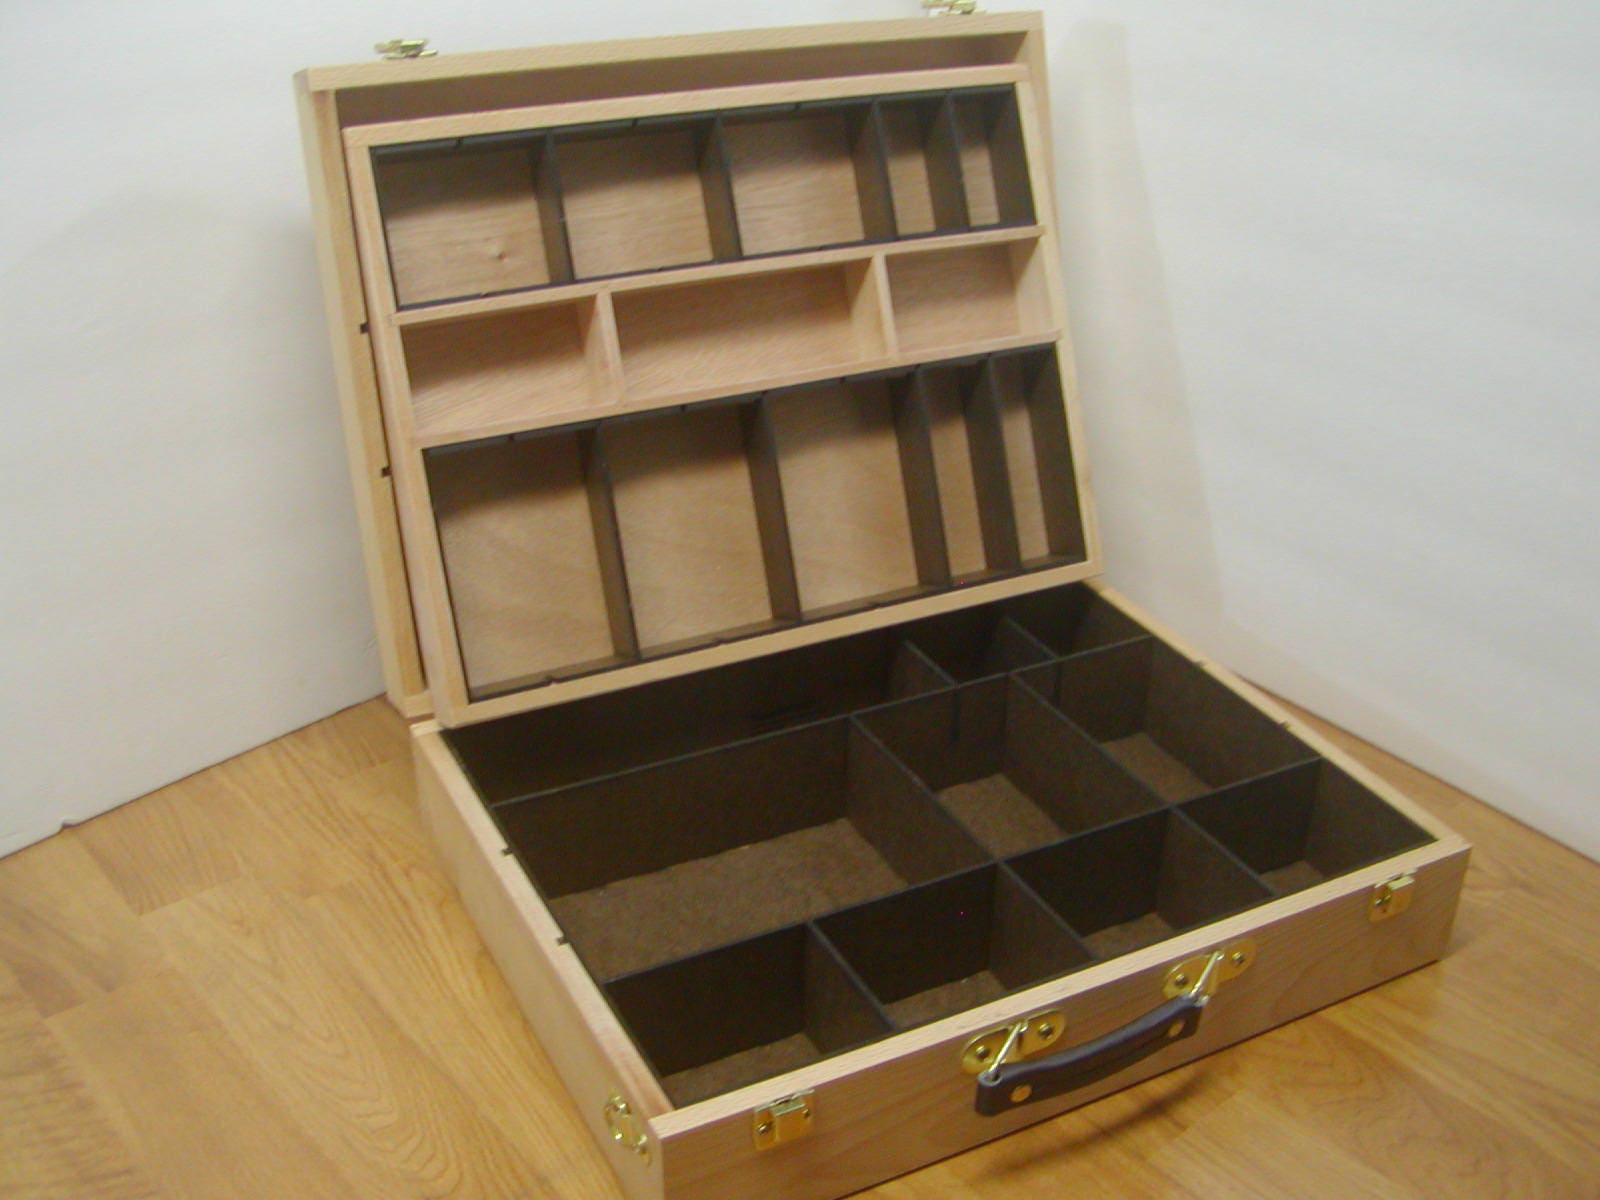 Catan Hobby Lobby Art Box Game Organizer Insert with